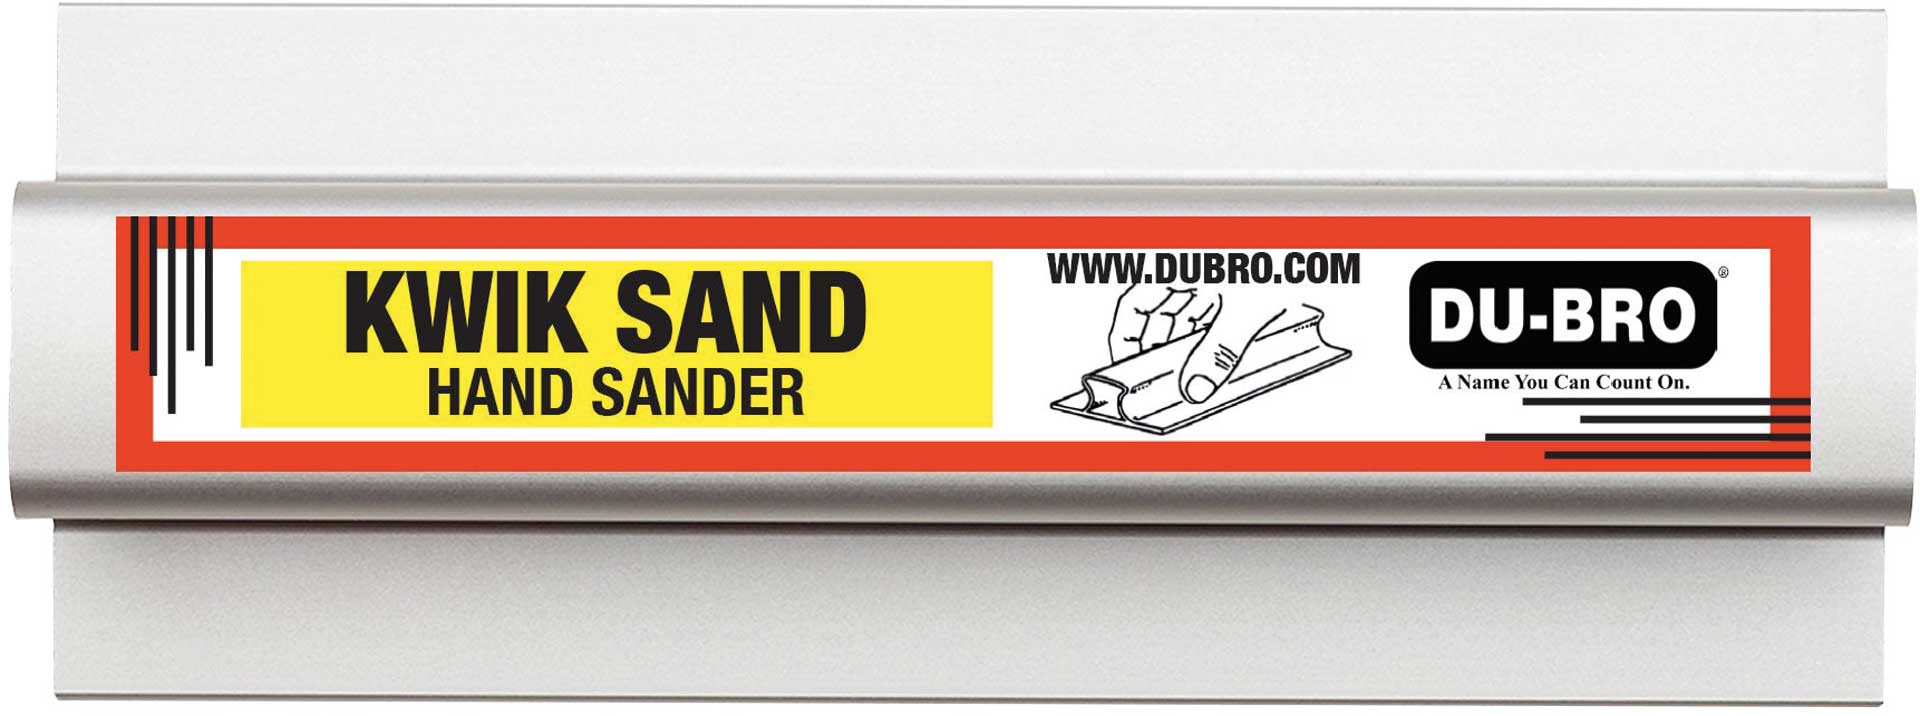 DUBRO Kwik Hand Sander 138x63mm (5,5 "x2,5") mit je 1x P80/150/220 Schleifpapier, Schleifblock, Schleifleiste, Alu